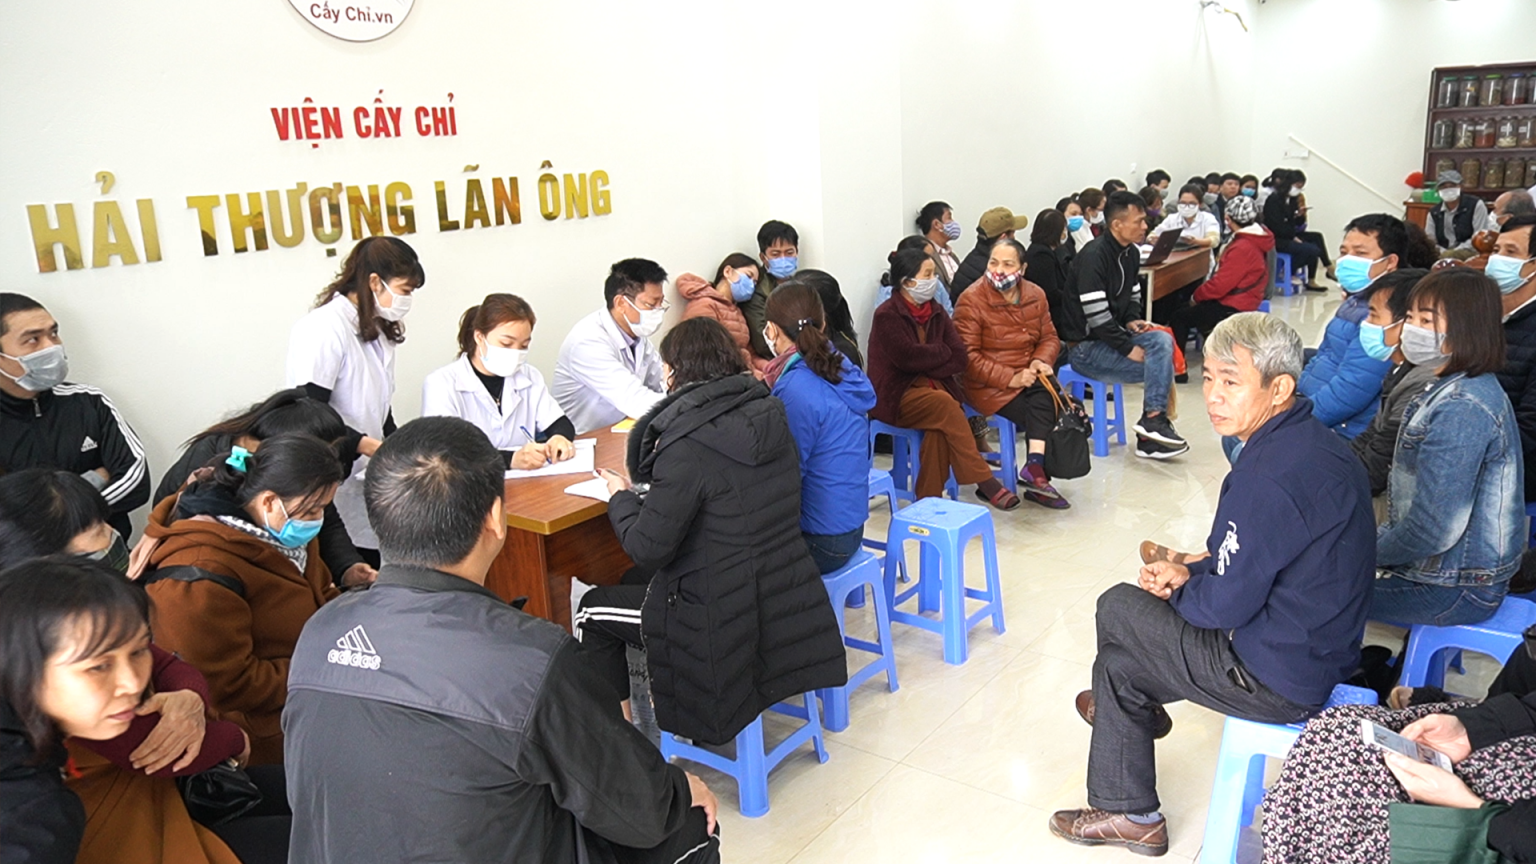 Hình ảnh Ths.Bs Ngô Quang Hùng thăm khám bệnh nhân tại Viện Cấy Chỉ Hải Thượng Lãn Ông